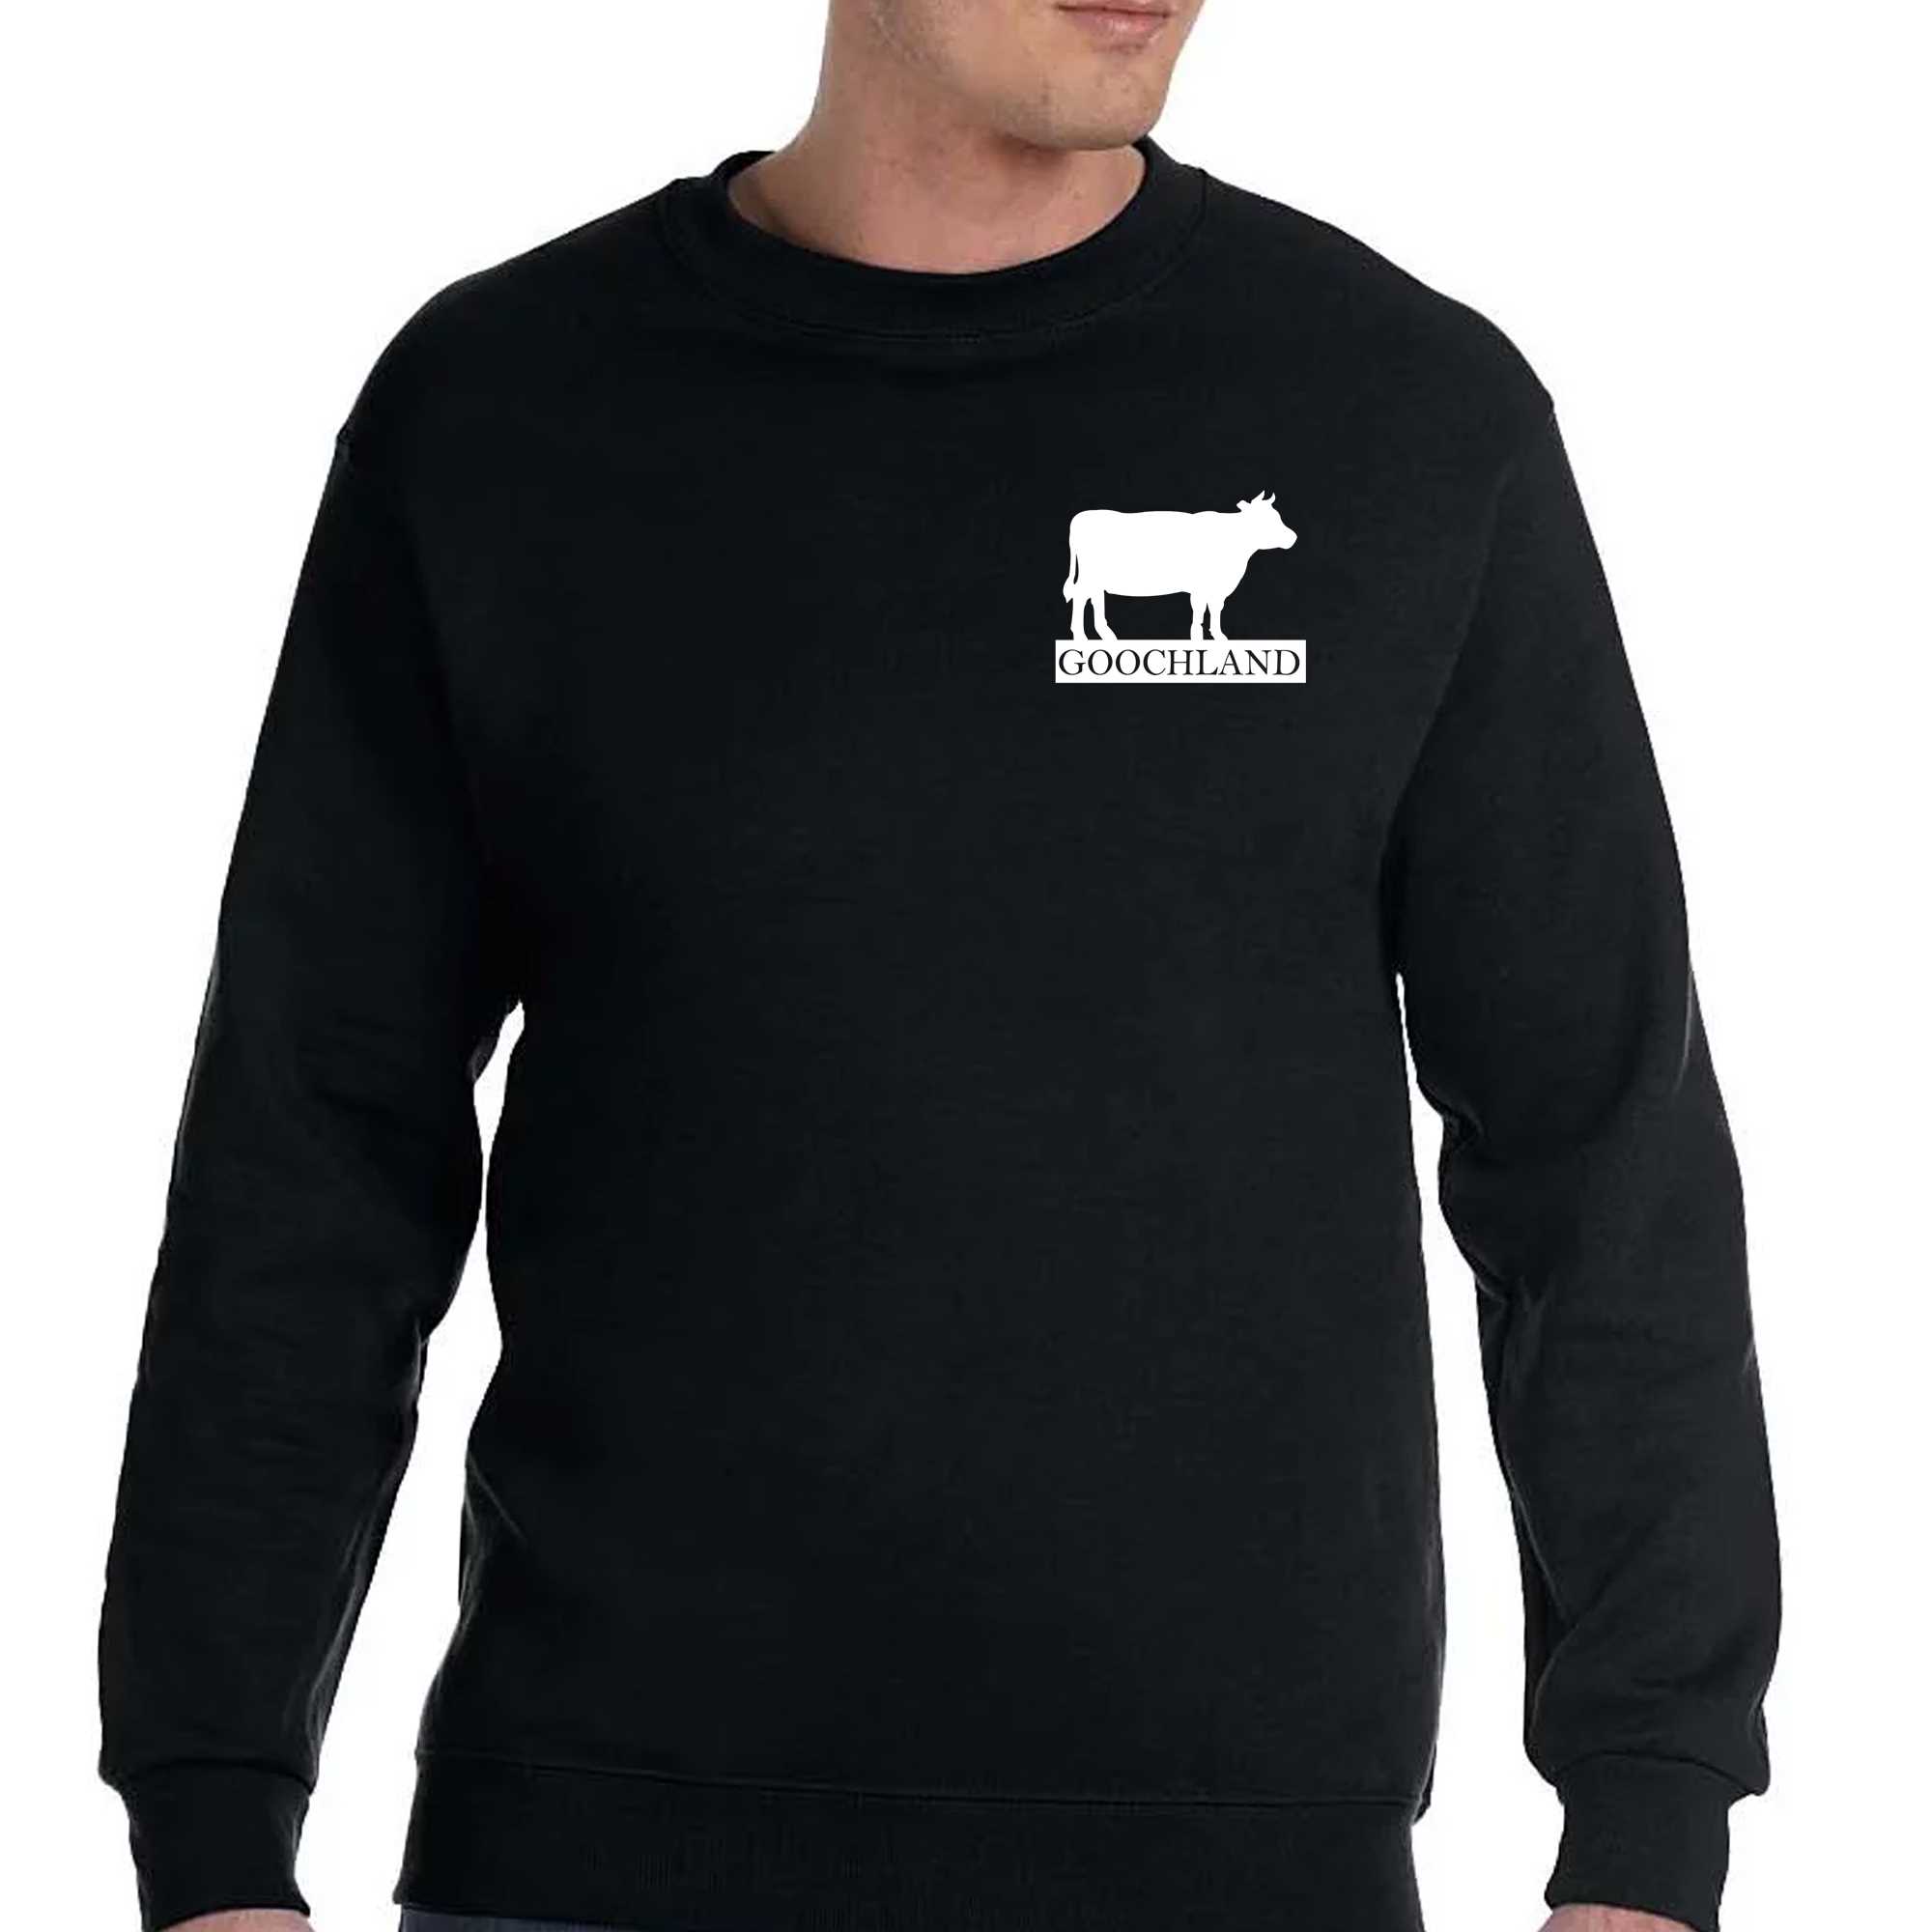 Oliver Anthony Goochland Cow T-shirt - Shibtee Clothing